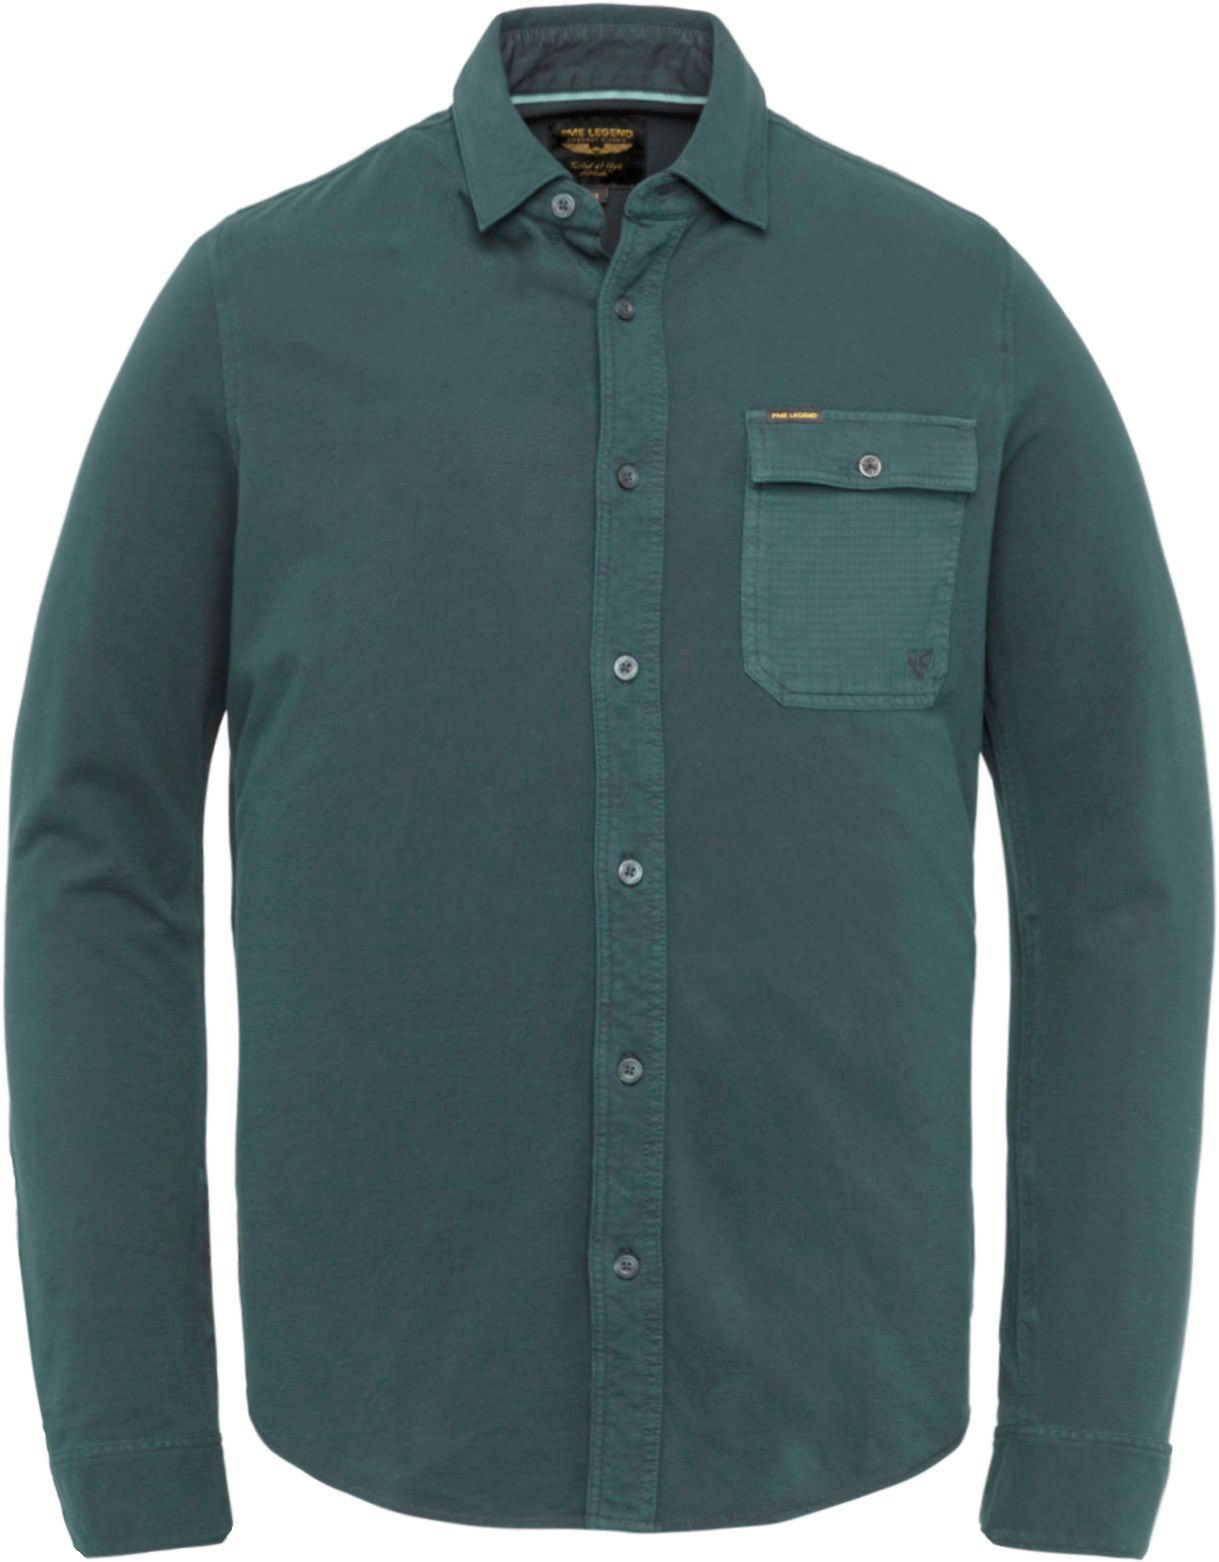 PME Legend Shirt Garment Dye Dark Green Dark Green size XL